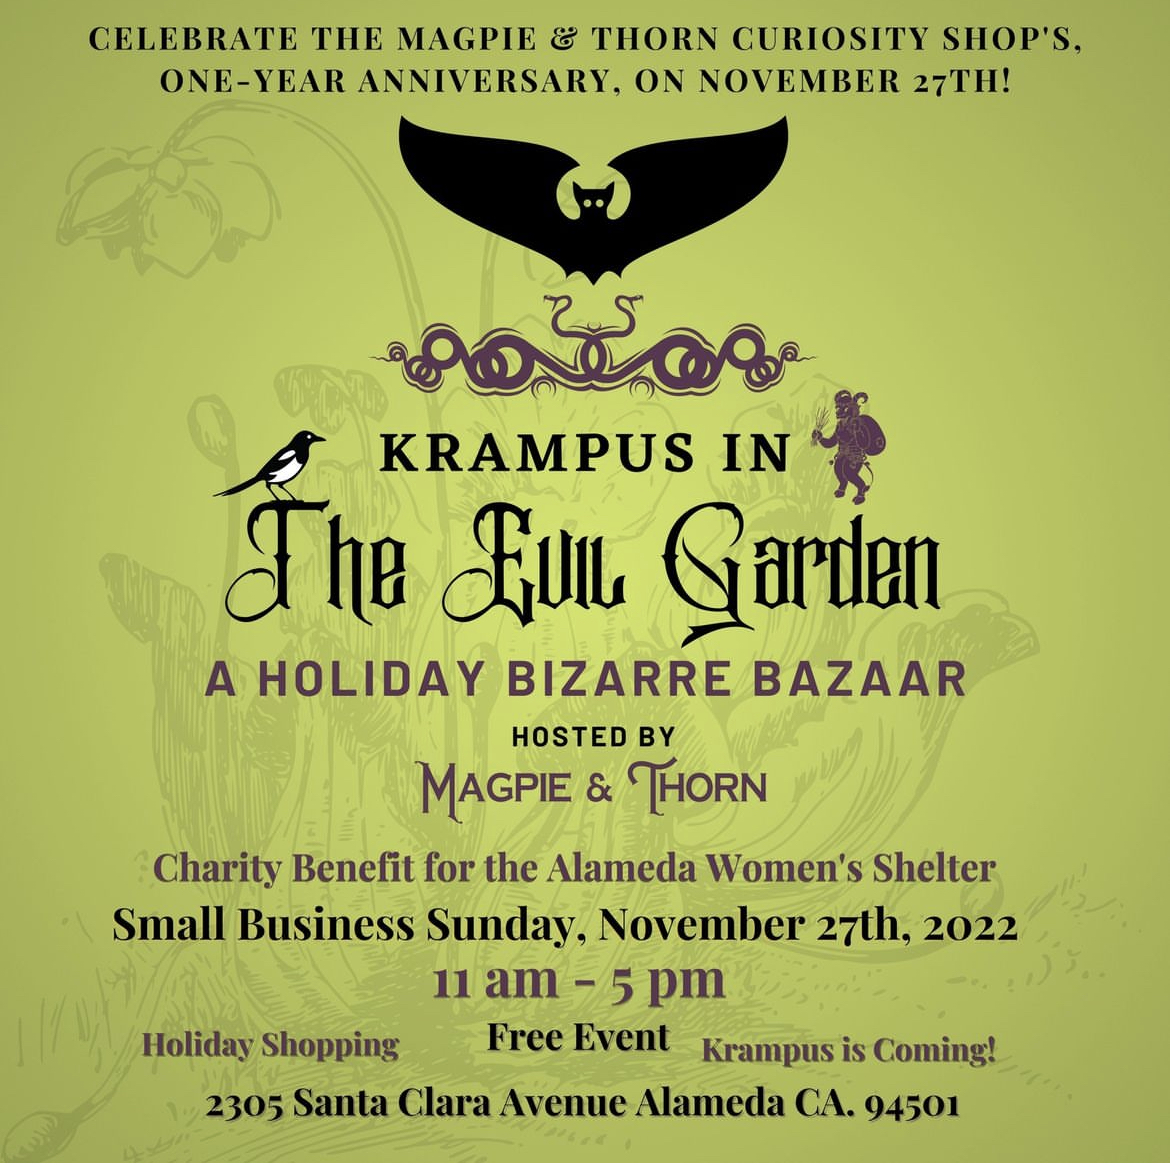 Krampus in The Evil Garden: A Holiday Bizarre Bazaar